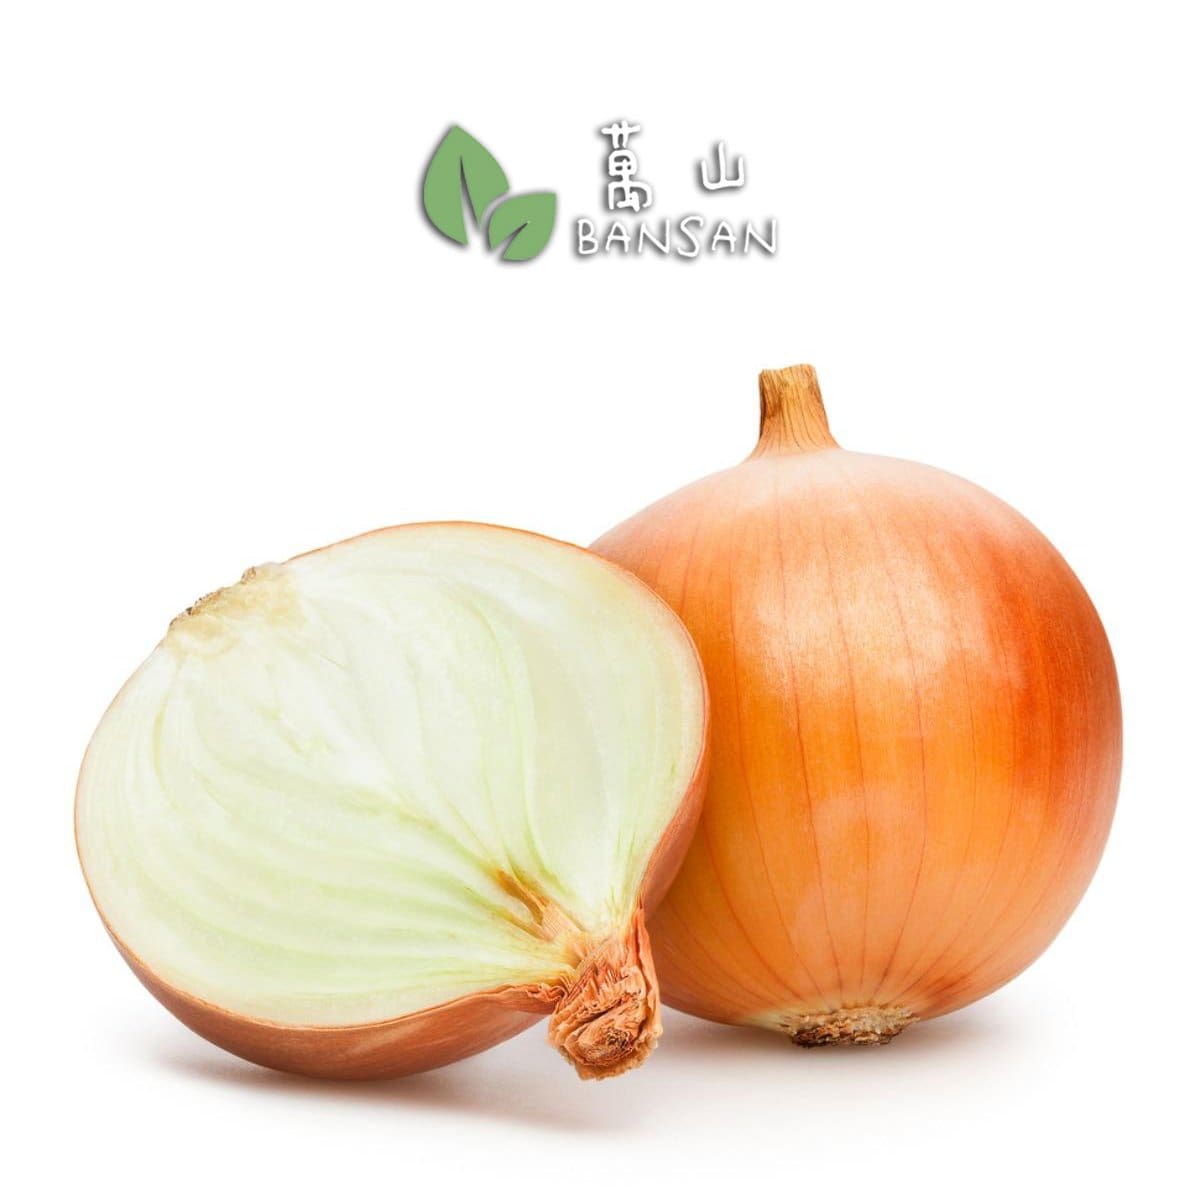 Holland White Onion 荷兰白洋葱 (±1 kg) - Bansan Penang